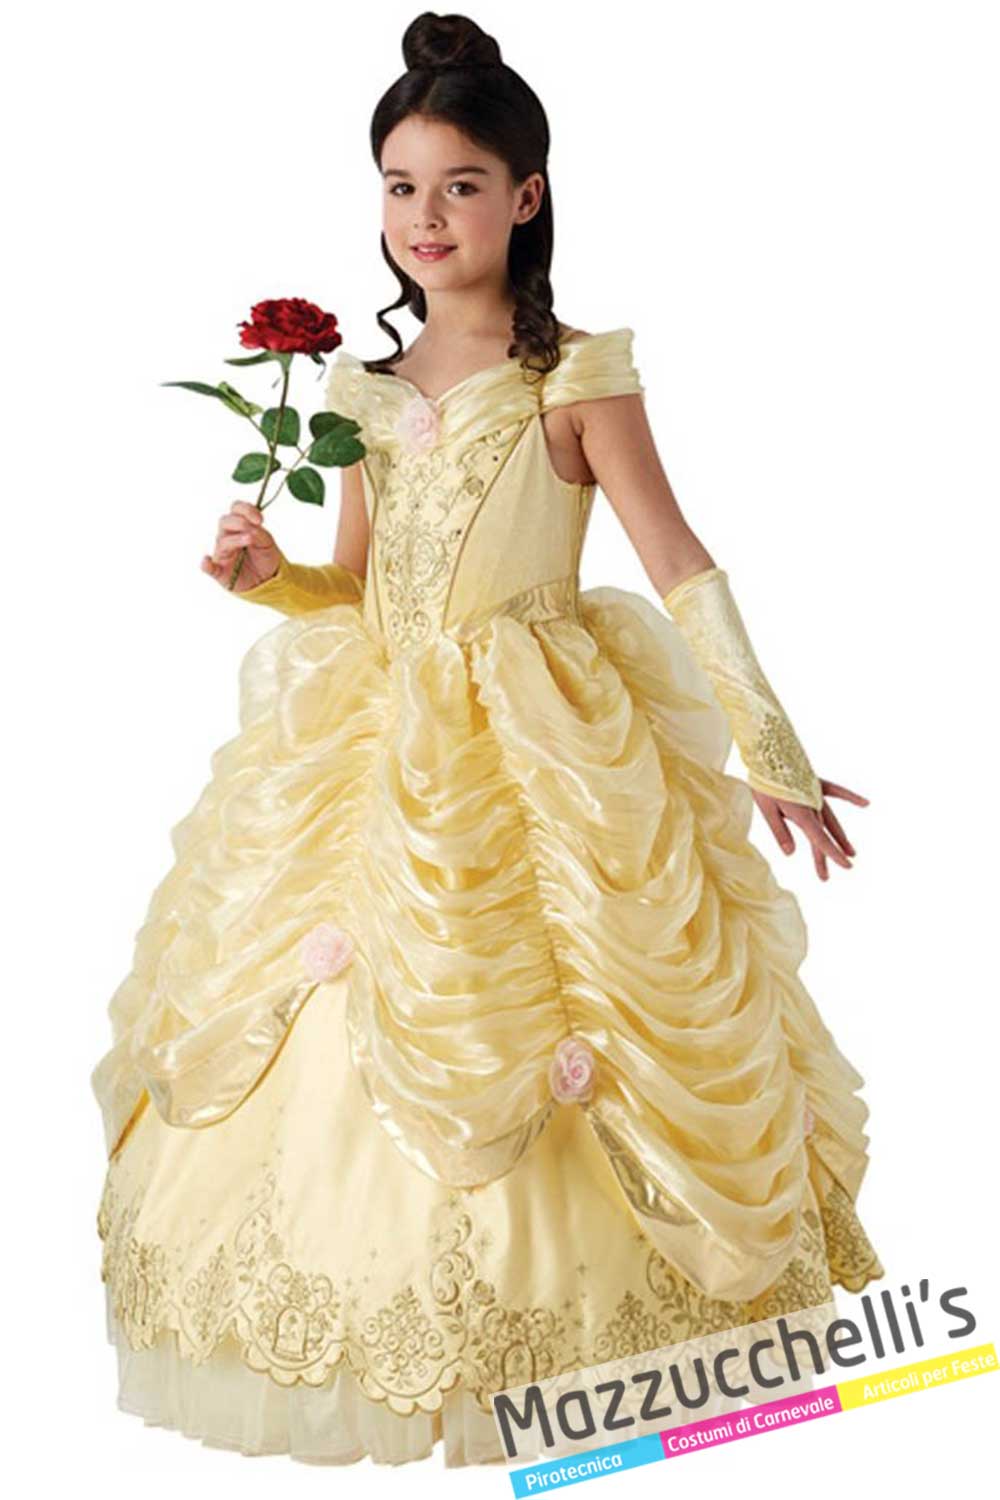 Costume Belle in vendita a Samarate Varese da Mazzucchellis